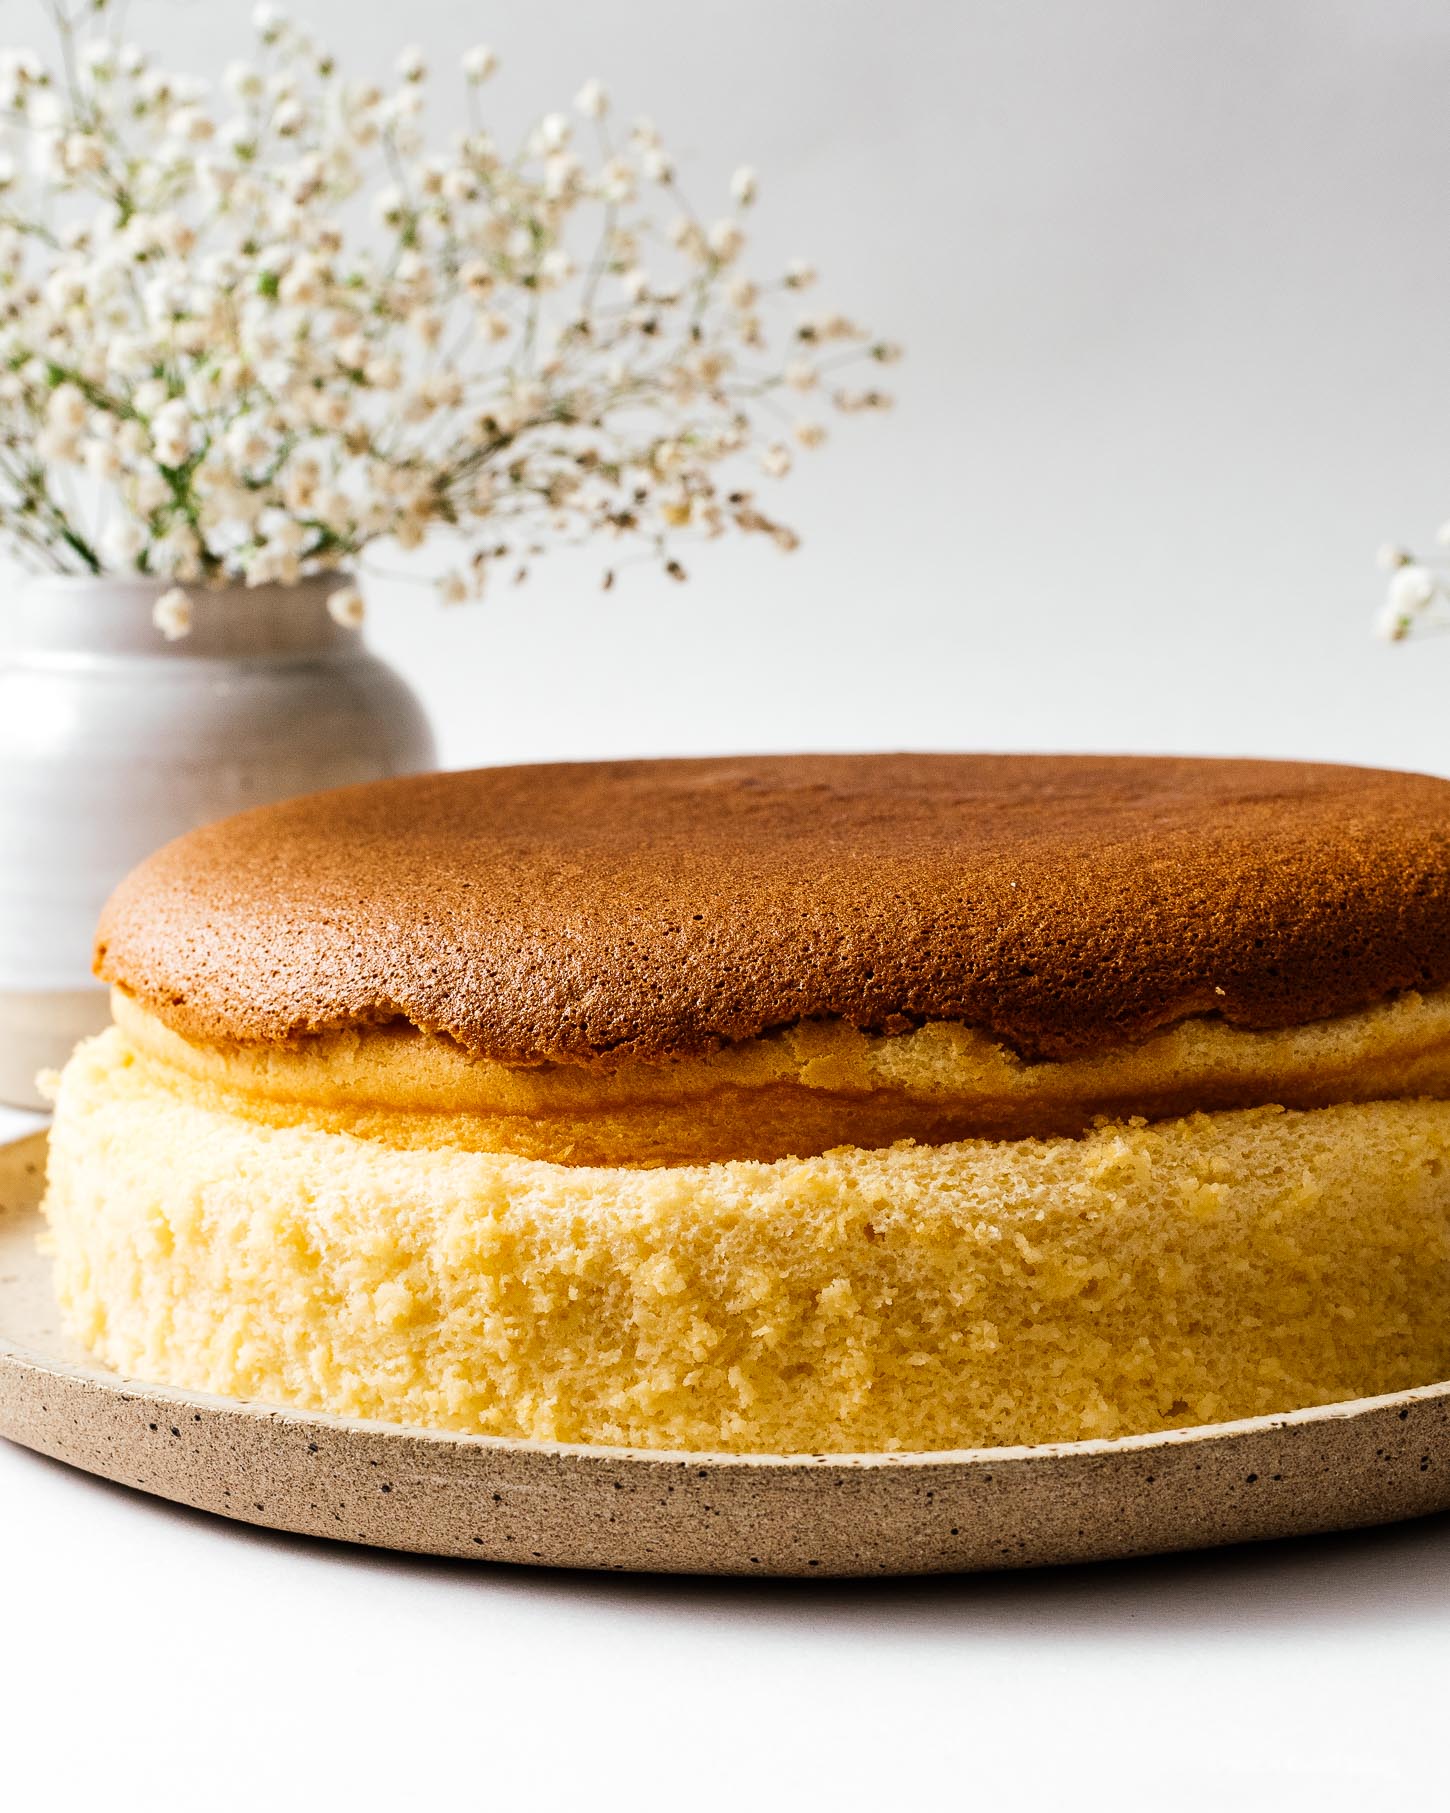 El cheesecake de algodón japonés es la combinación perfecta de bizcocho, sabor y textura. Con la textura suave y masticable del soufflé, ligera como el aire, la dulzura perfecta, perfectamente masticable y picada con un toque de queso crema picante. #cottoncheesecake #cottoncheesecakerecipe #japanesecheesecake #japanesecheesecakerecipe #cheesecake #cheesecakerecipe #recipes #jigglycheesecake 